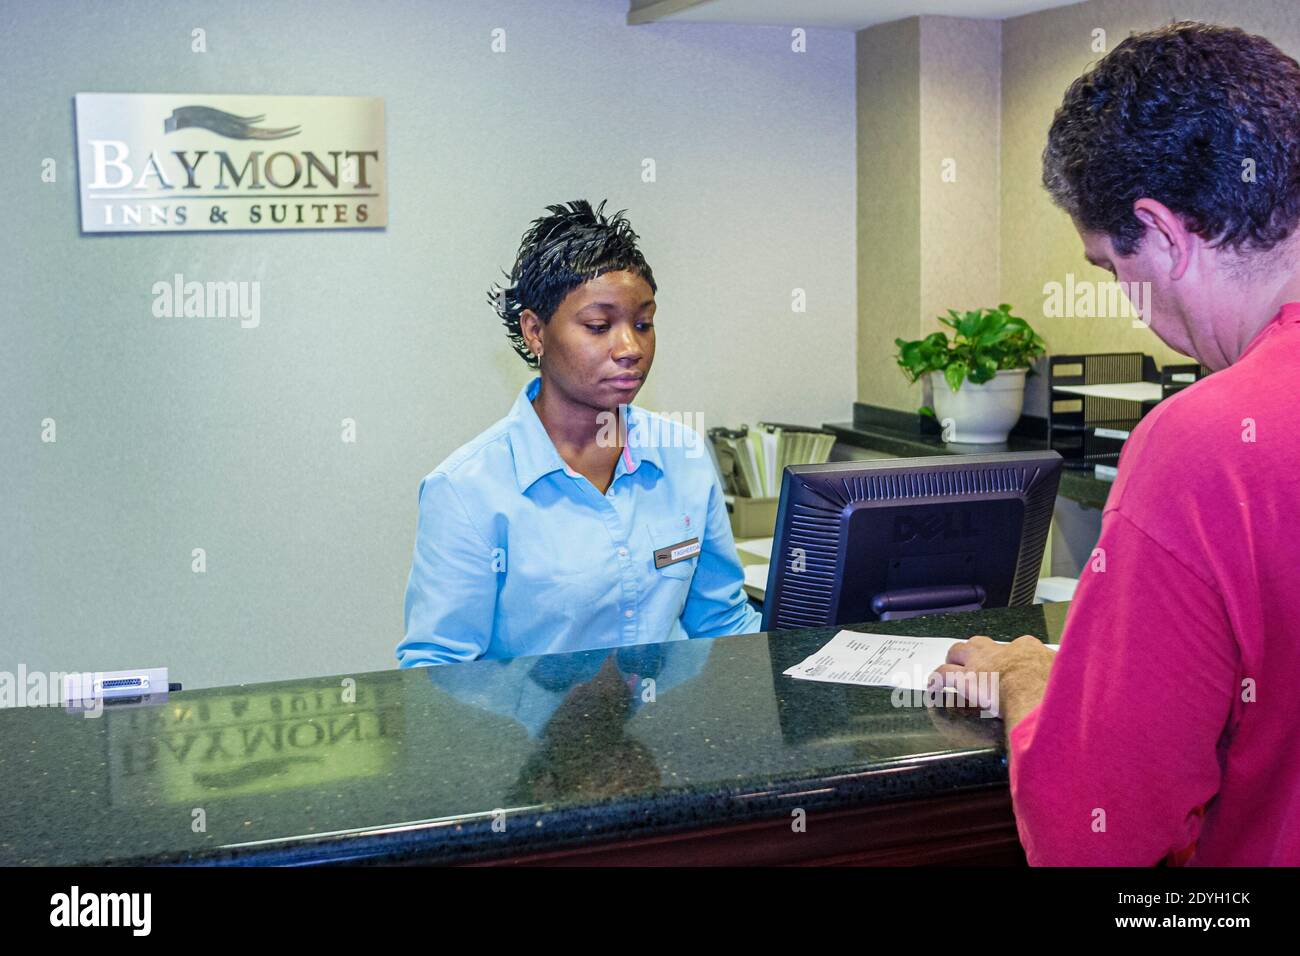 Birmingham Alabama, Baymont Inn & Suites, Hotellobby Schwarze Frau Angestellte an der Rezeption, Rezeptionist reserviert Mann männlicher Gast beim Check-in Stockfoto